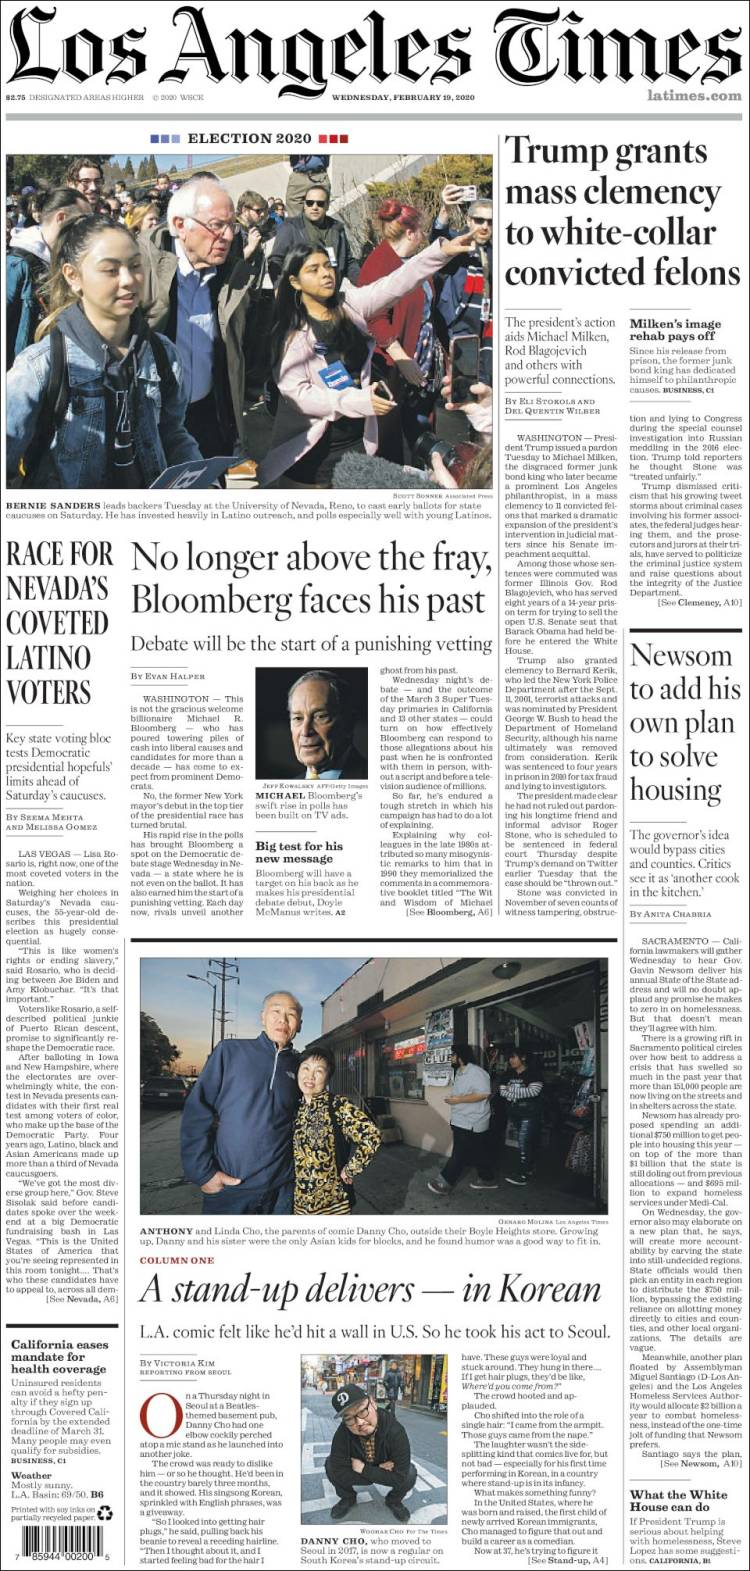 صفحه اول روزنامه لس آنجلس تایمز/ رقابت در نوادا برای جلب نظر رای دهندگان لاتین تبار